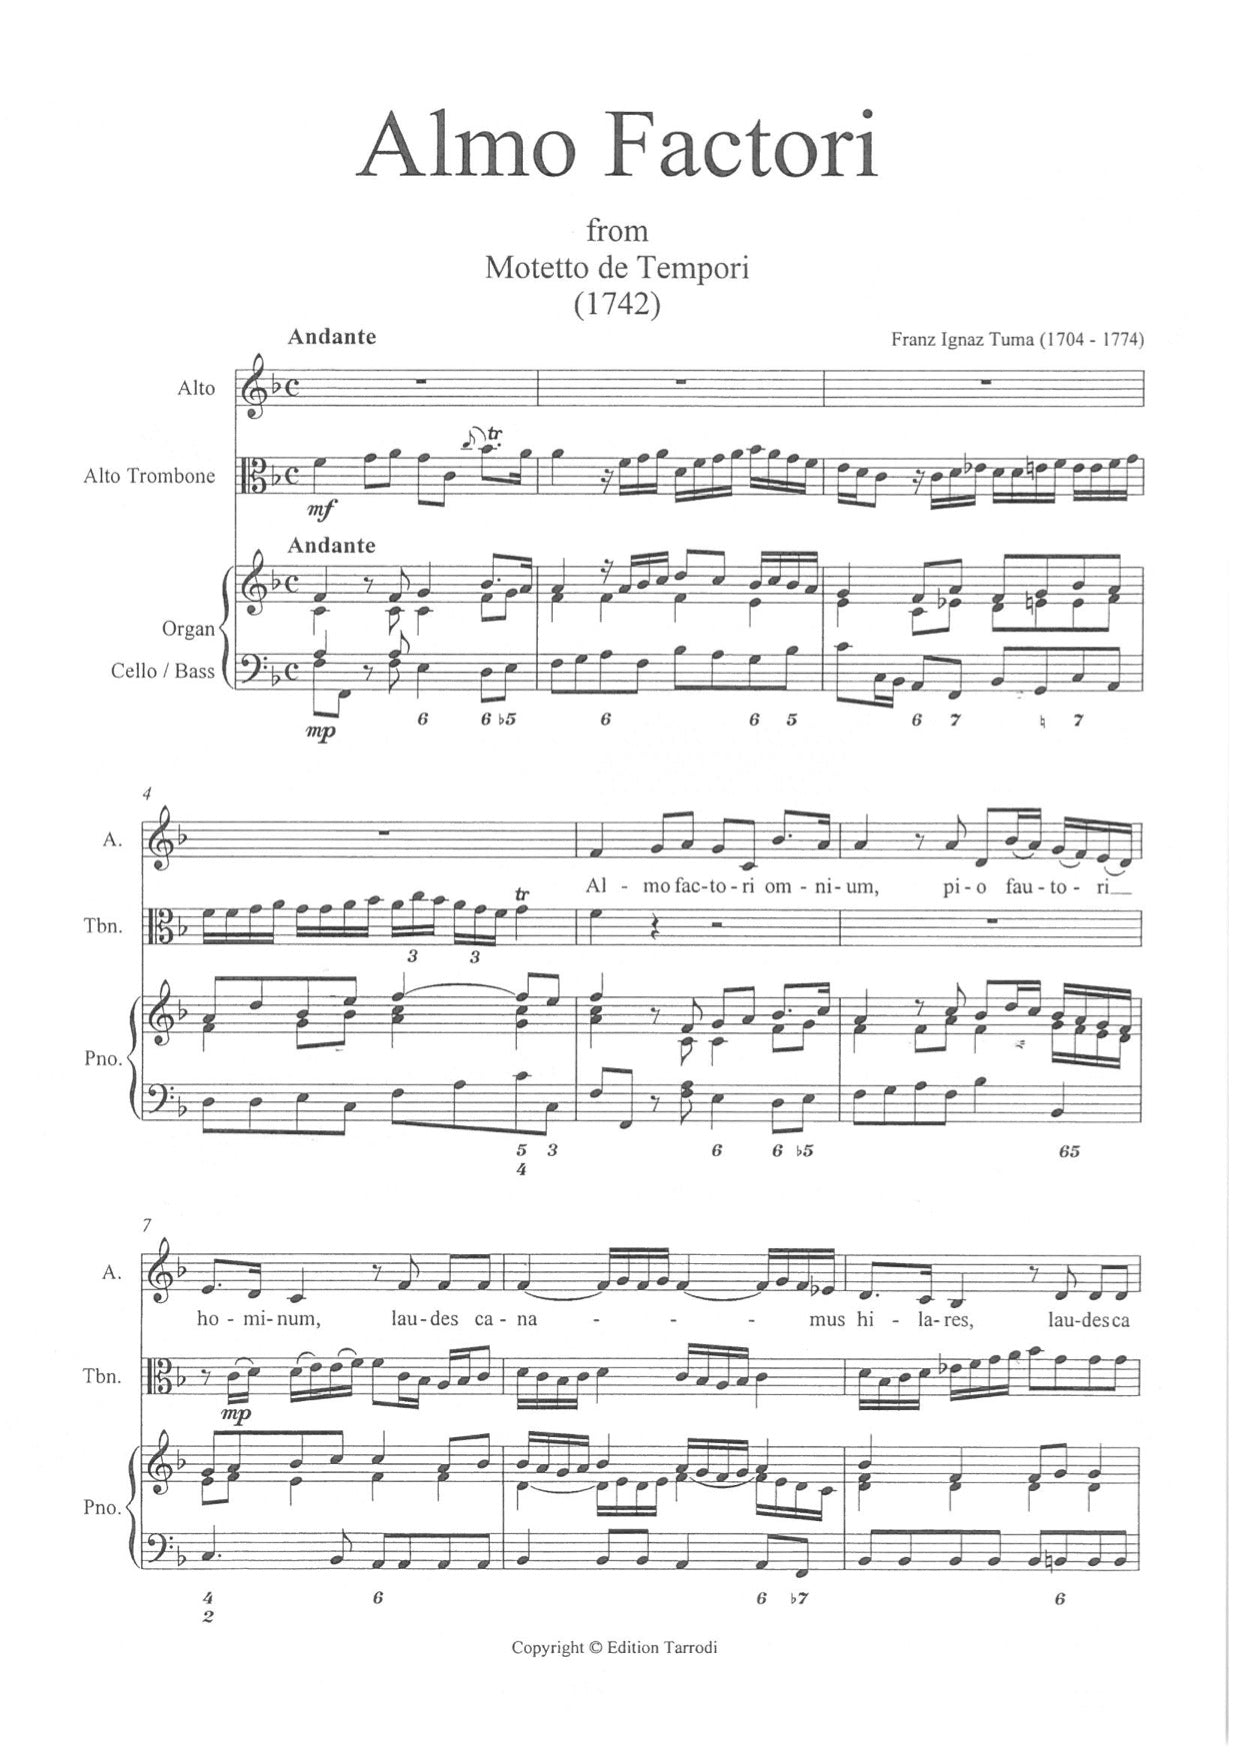 Tuma Franz Ignas  - Almo Factori, Alto voice, Alto trombone, Organ & Cello/Basso